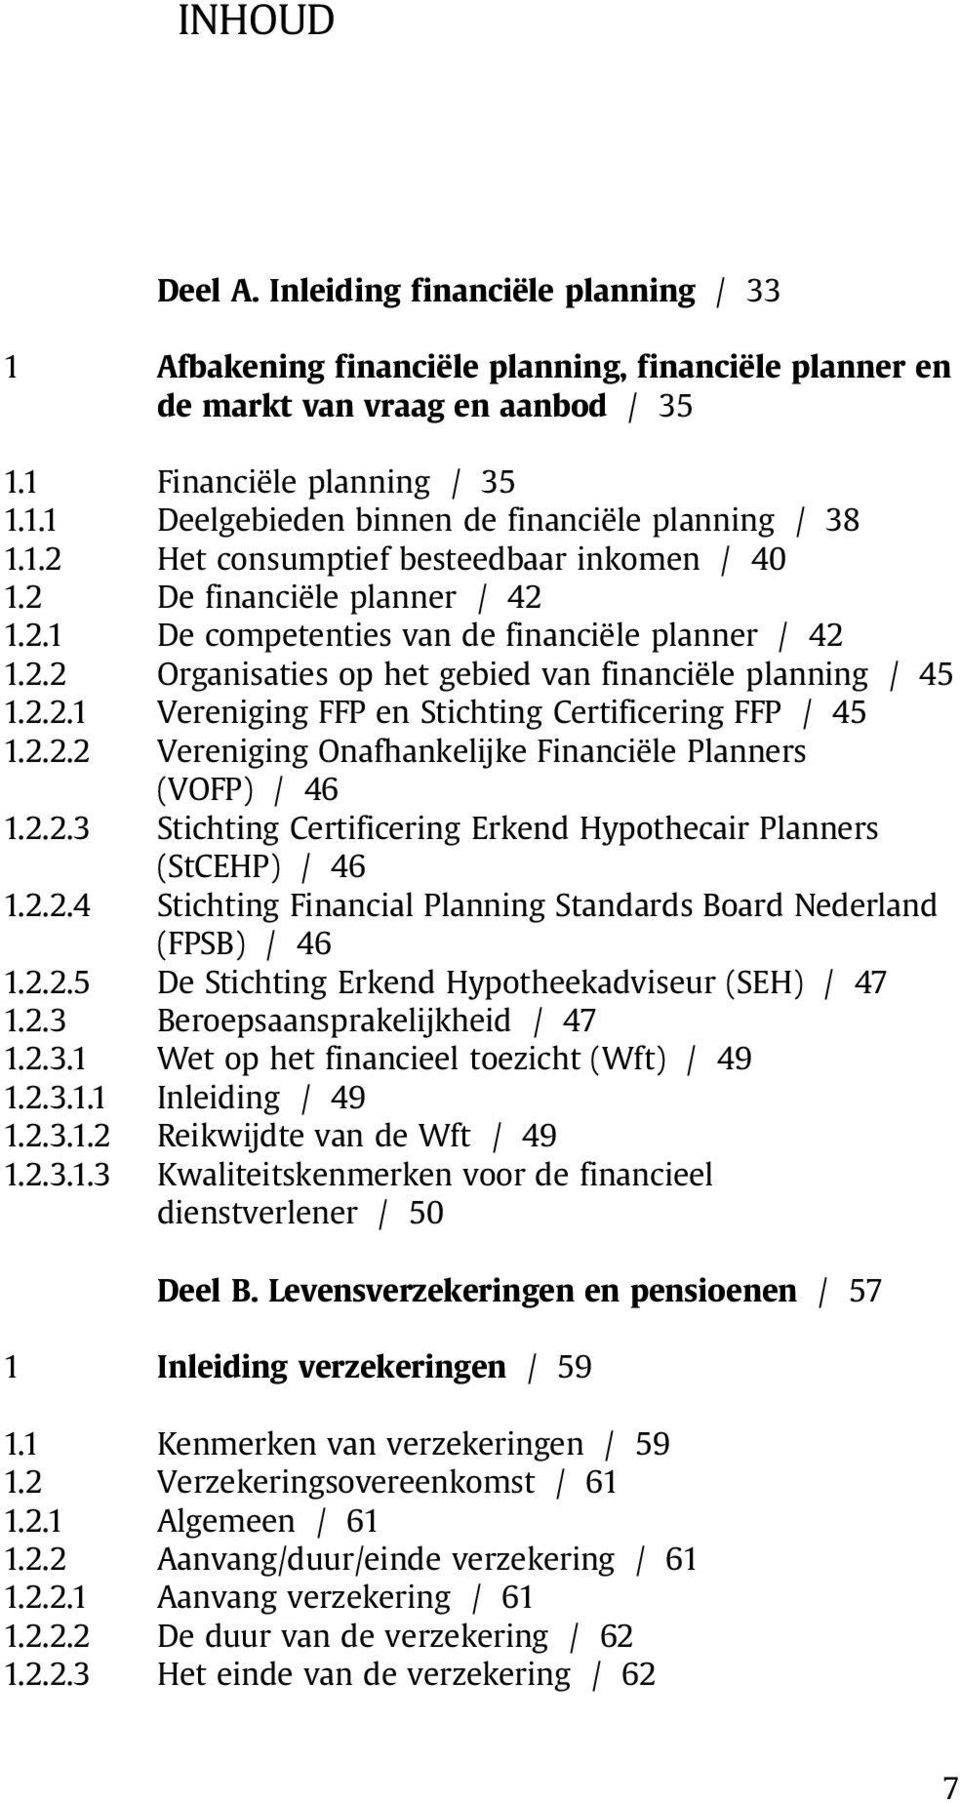 2.2.2 Vereniging Onafhankelijke Financiële Planners (VOFP) / 46 1.2.2.3 Stichting Certificering Erkend Hypothecair Planners (StCEHP) / 46 1.2.2.4 Stichting Financial Planning Standards Board Nederland (FPSB) / 46 1.